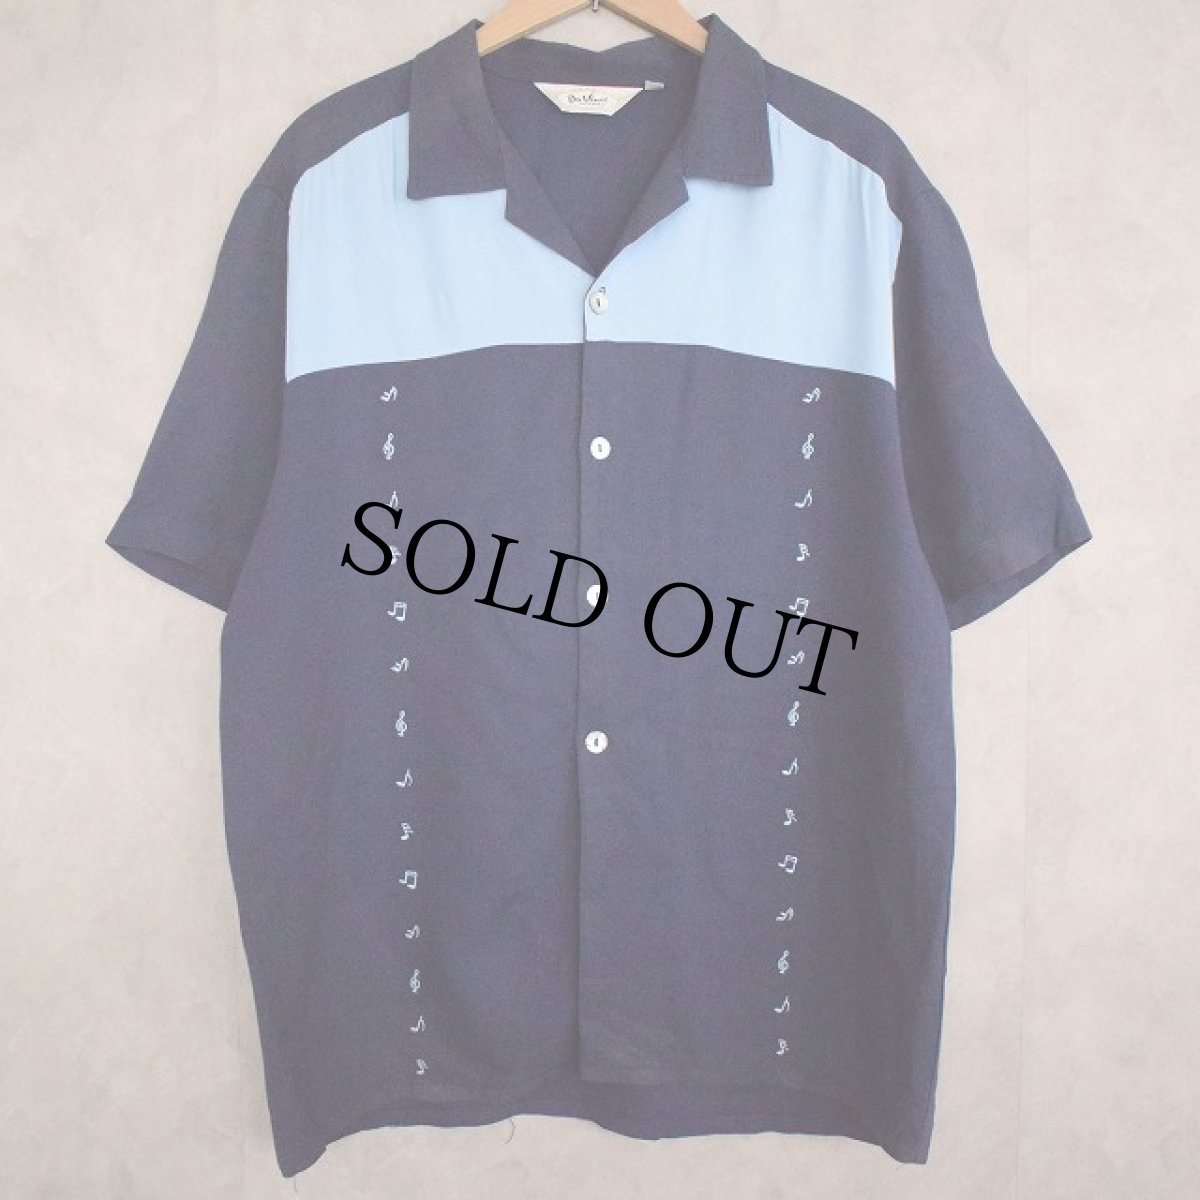 画像1: 70's〜 Da Vinci USA製 Rockabilly Rayon Shirt L (1)